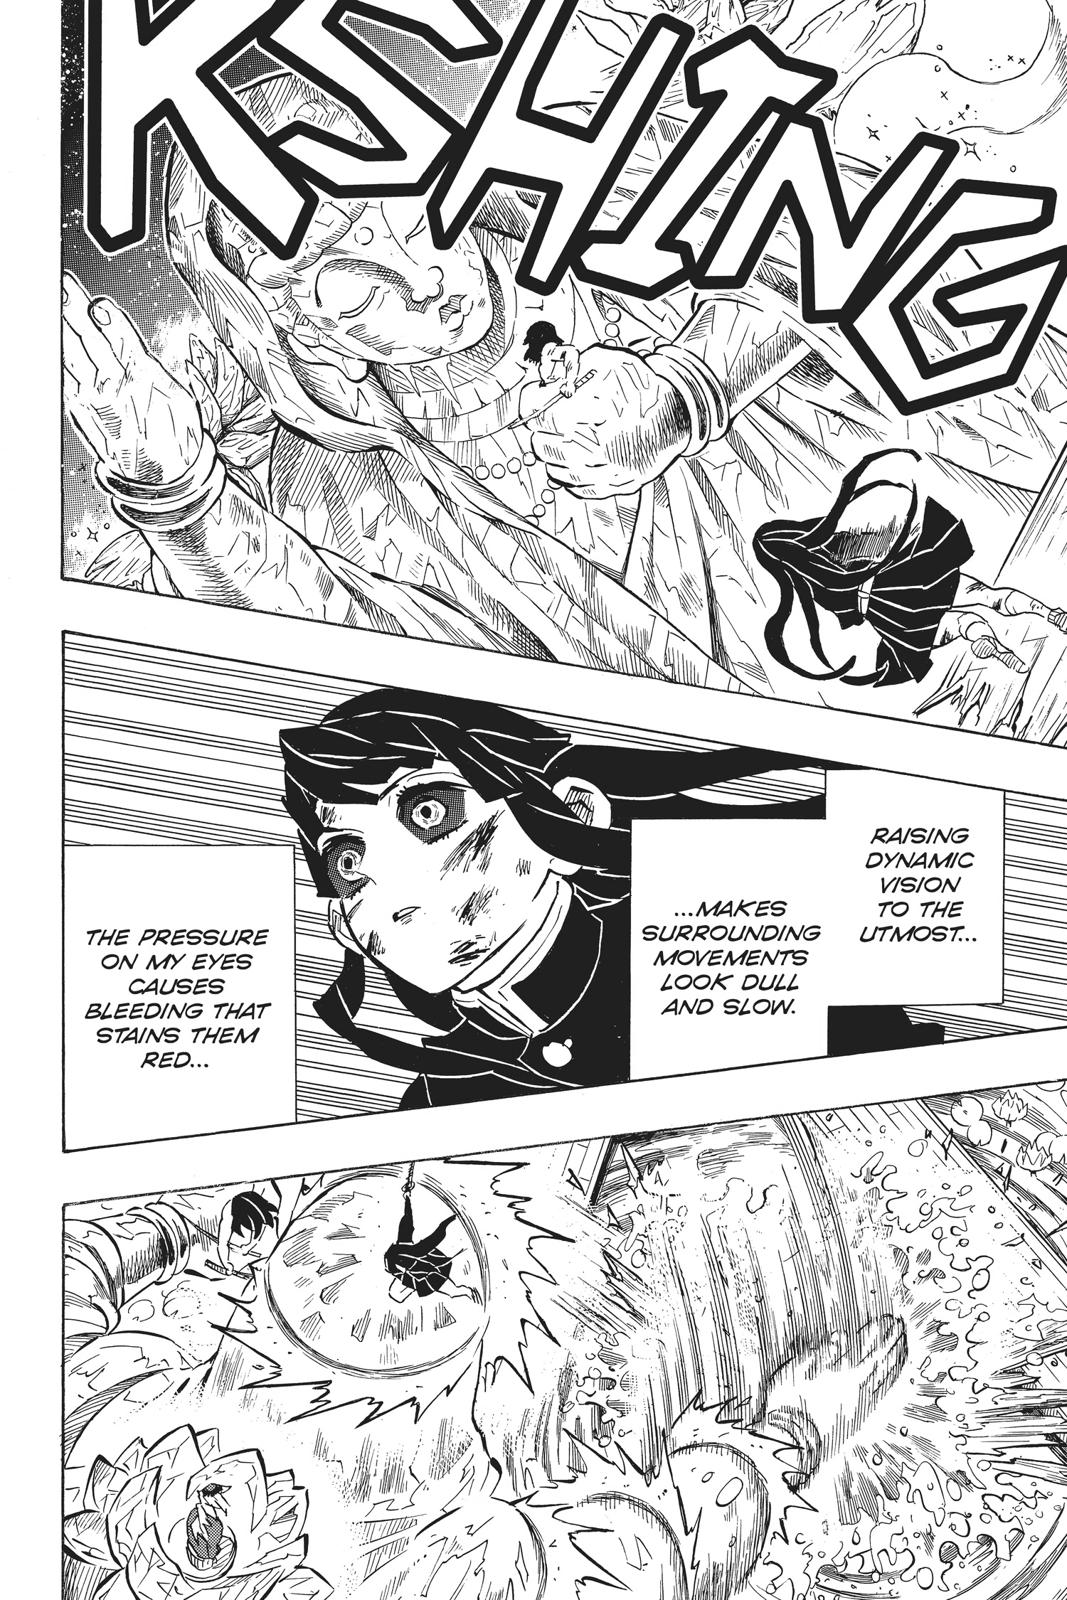 Demon Slayer Manga Manga Chapter - 162 - image 8